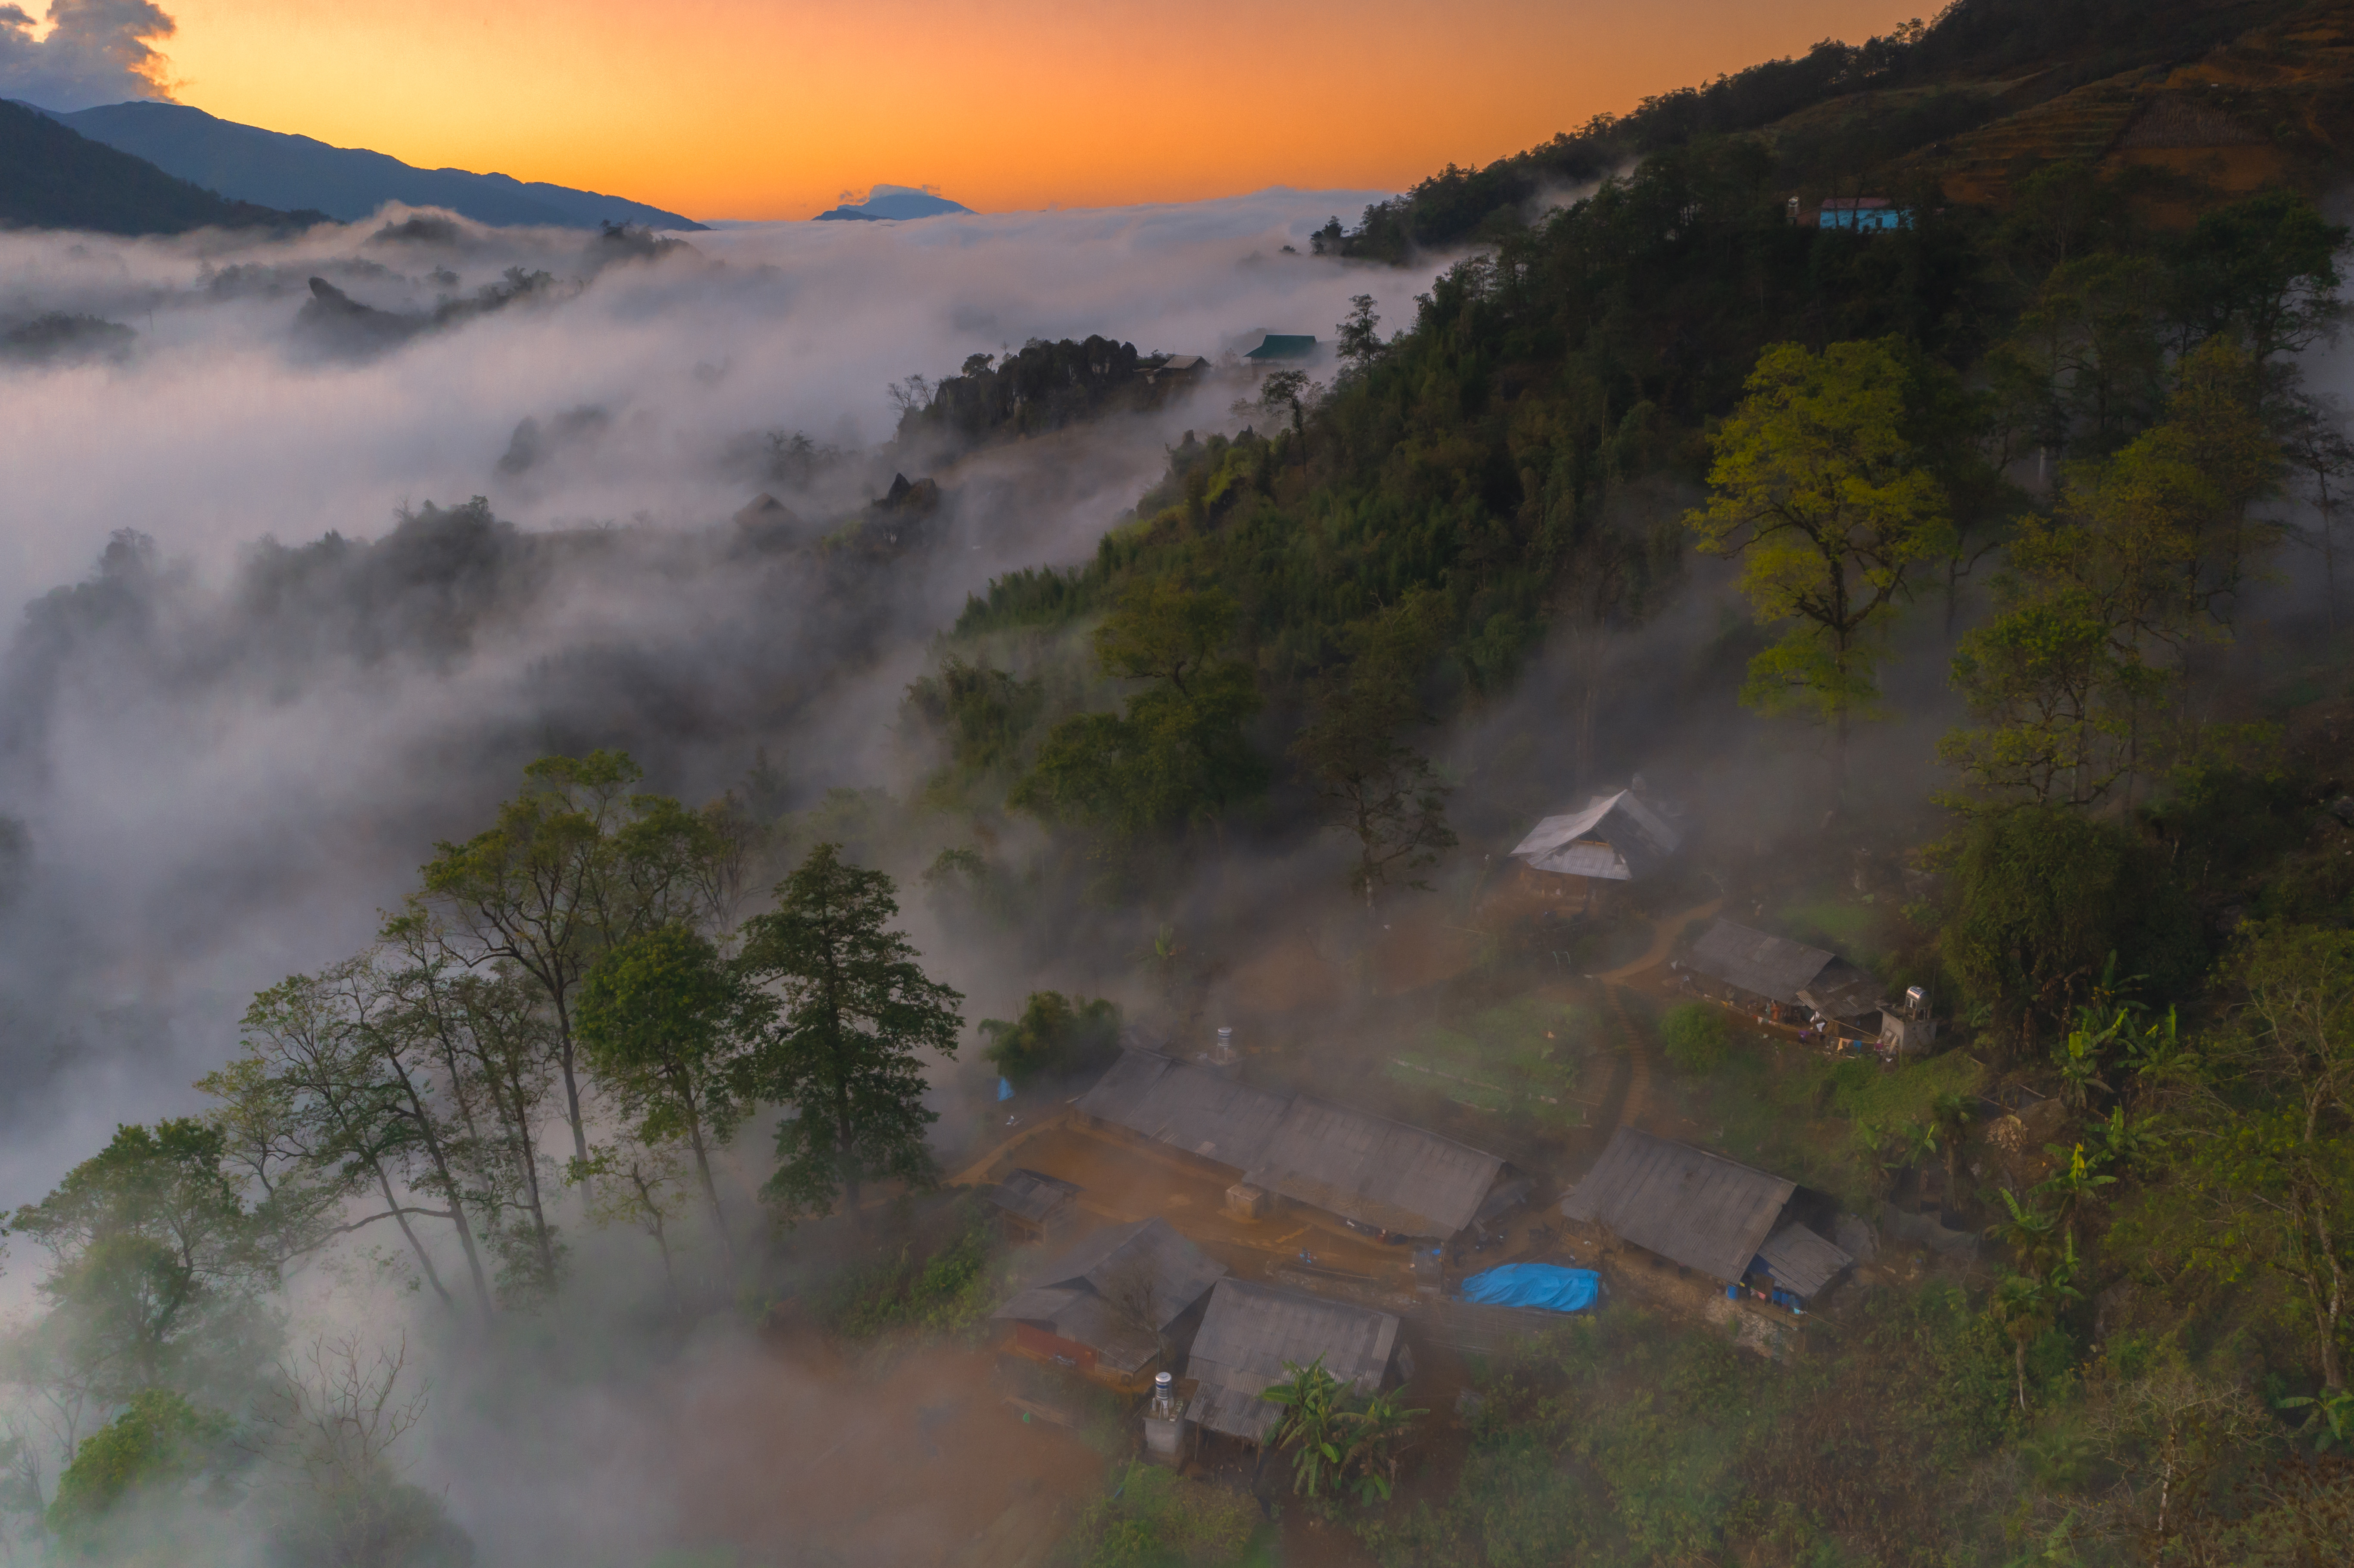 Khung cảnh “biển mây” mờ ảo, len lỏi dưới từng ngọn núi, ngôi nhà được chụp từ khu vực Hang Đá (xã Hầu Thào) vào ngày 4/12